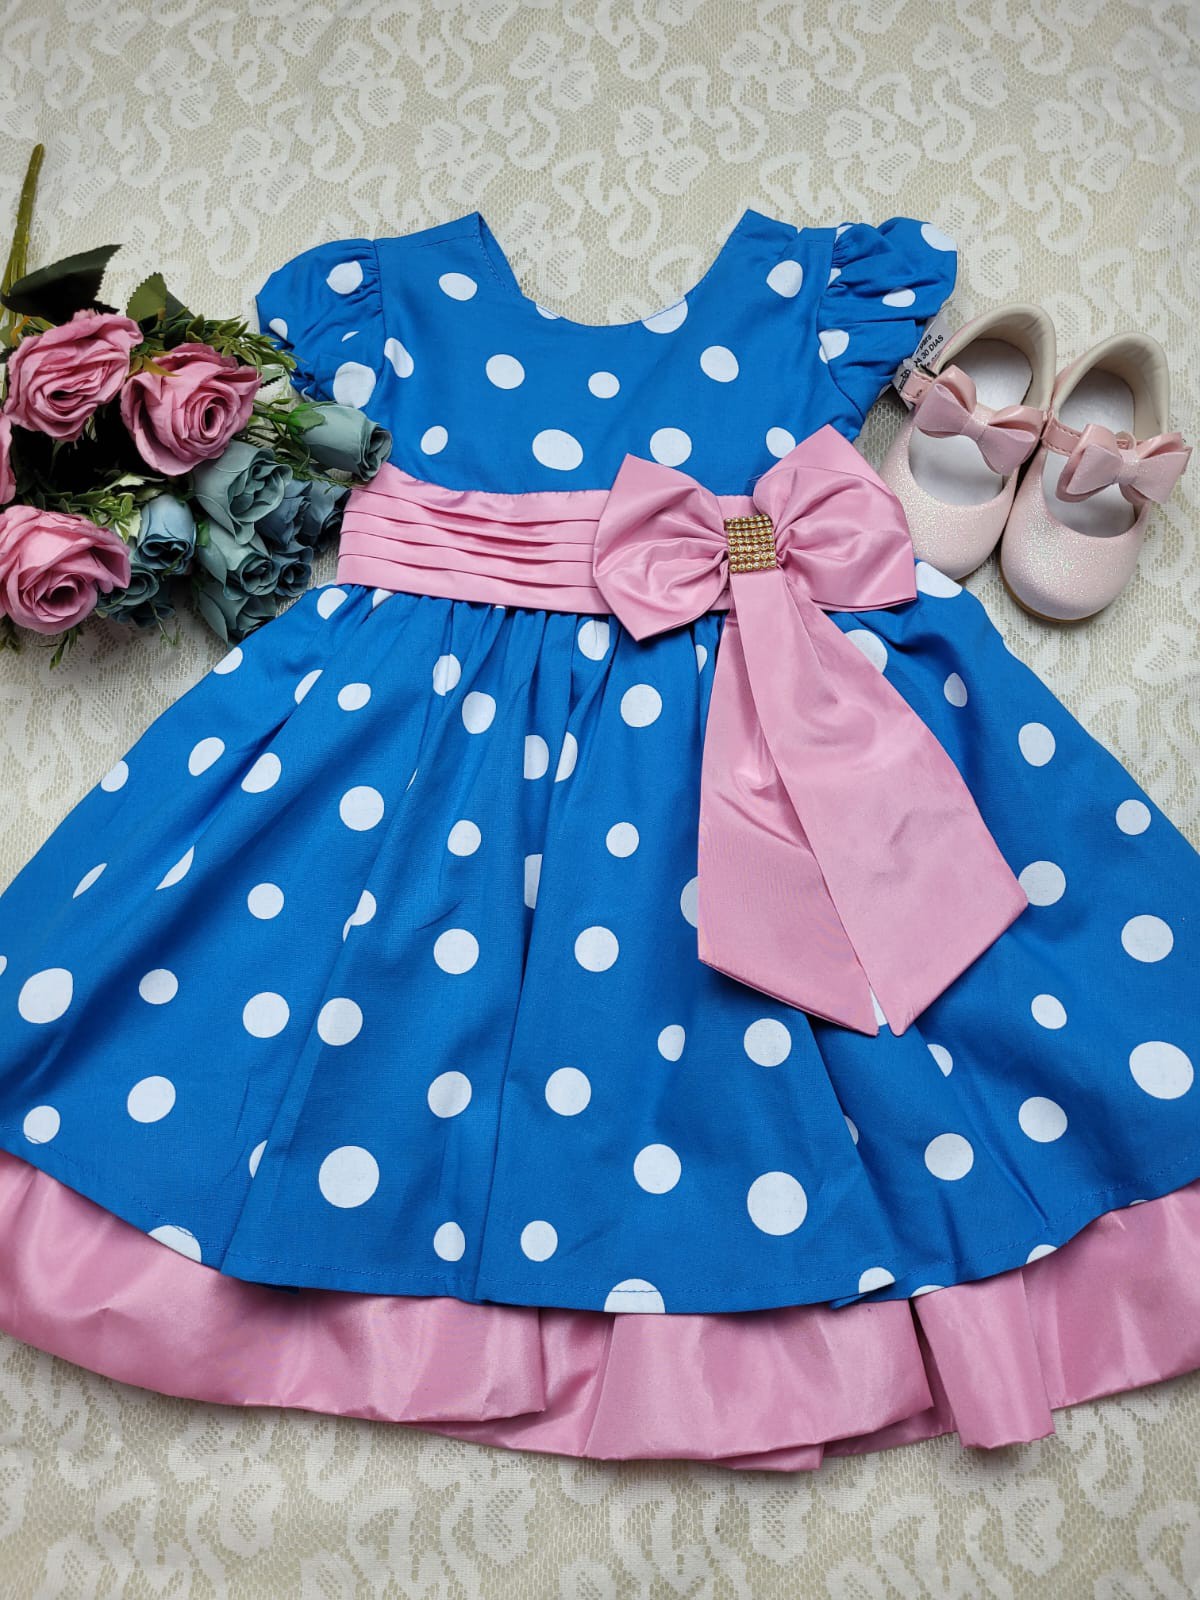 Vestido Infantil Azul com bolinhas Branca - Pekeninos Kids Store